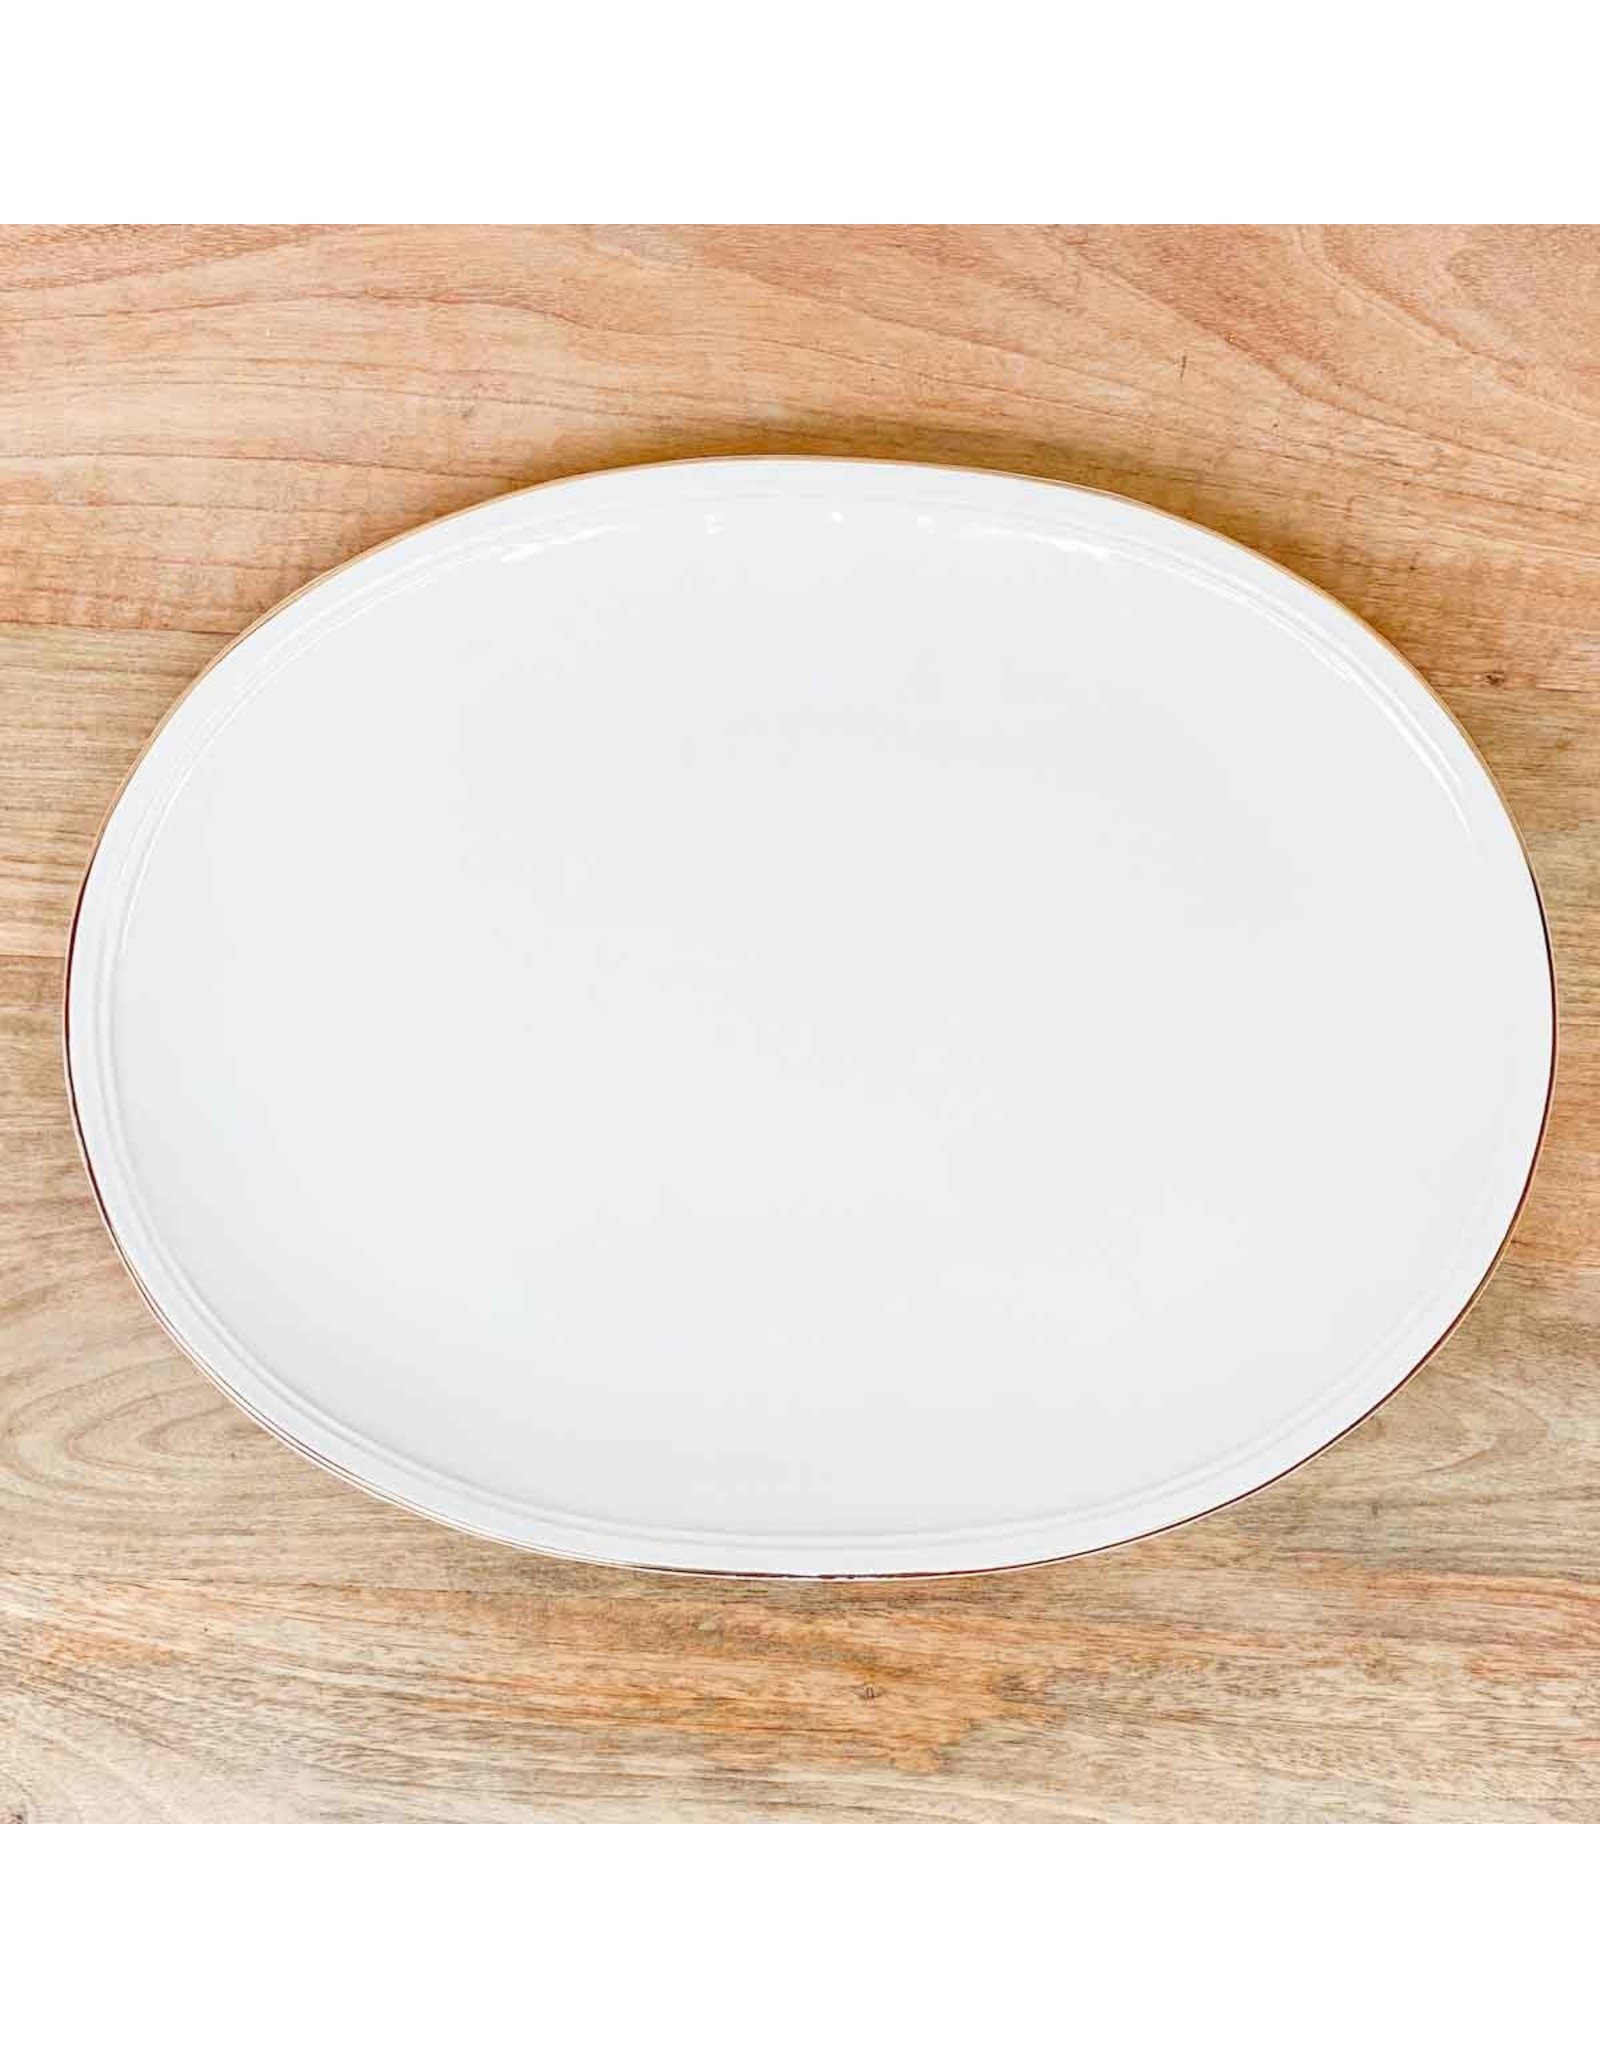 136521041 Classic Rim Platter white/gold 16 x 12